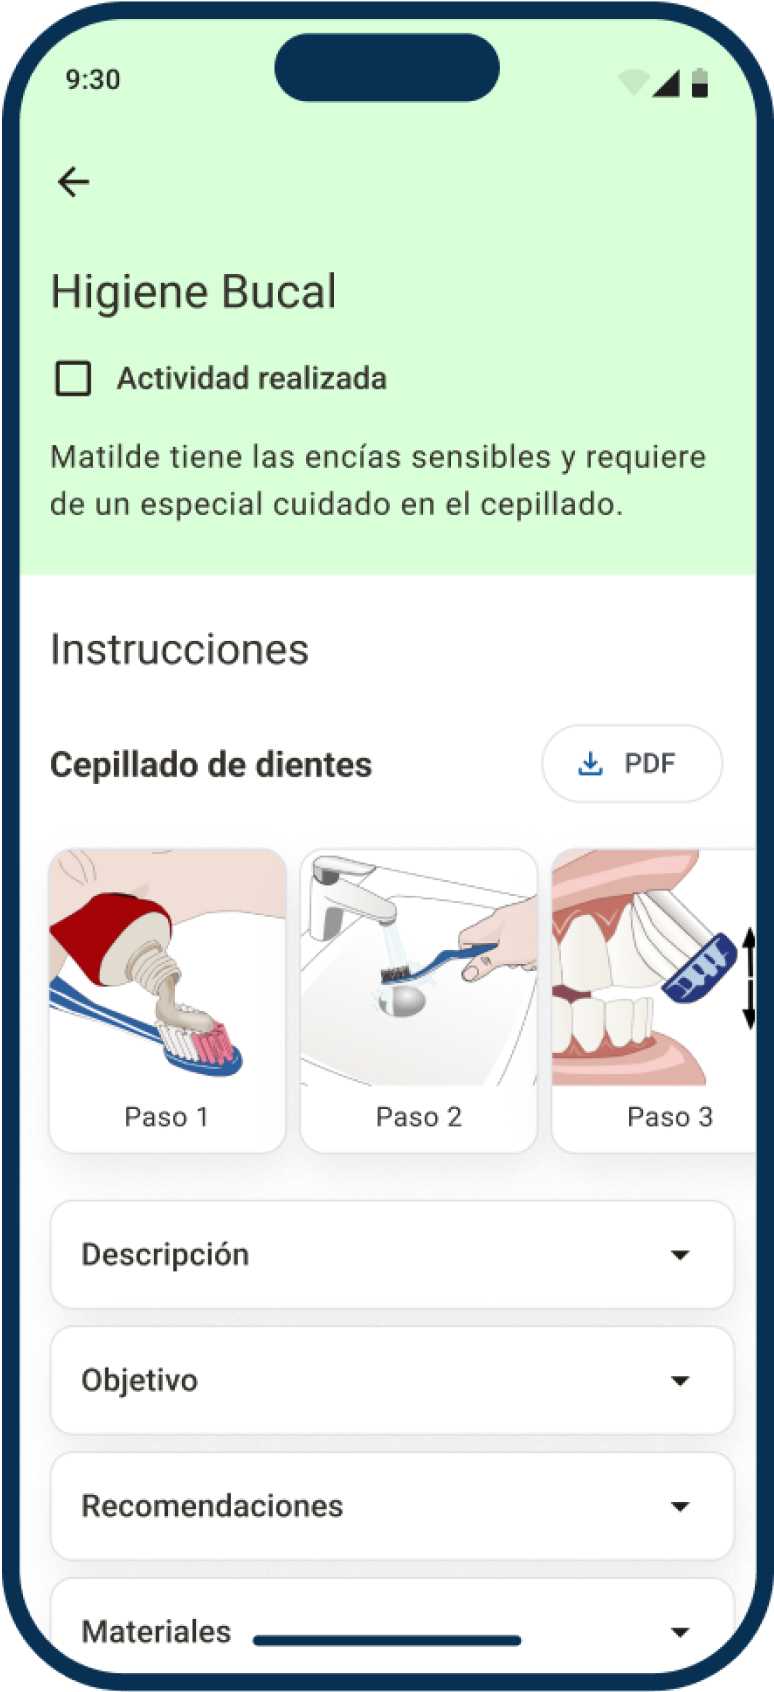 App de Ubikare, pantalla mostrando actividad llamada 'Higien bucal' con sus instrucciones, descripción, objetivos, etc.